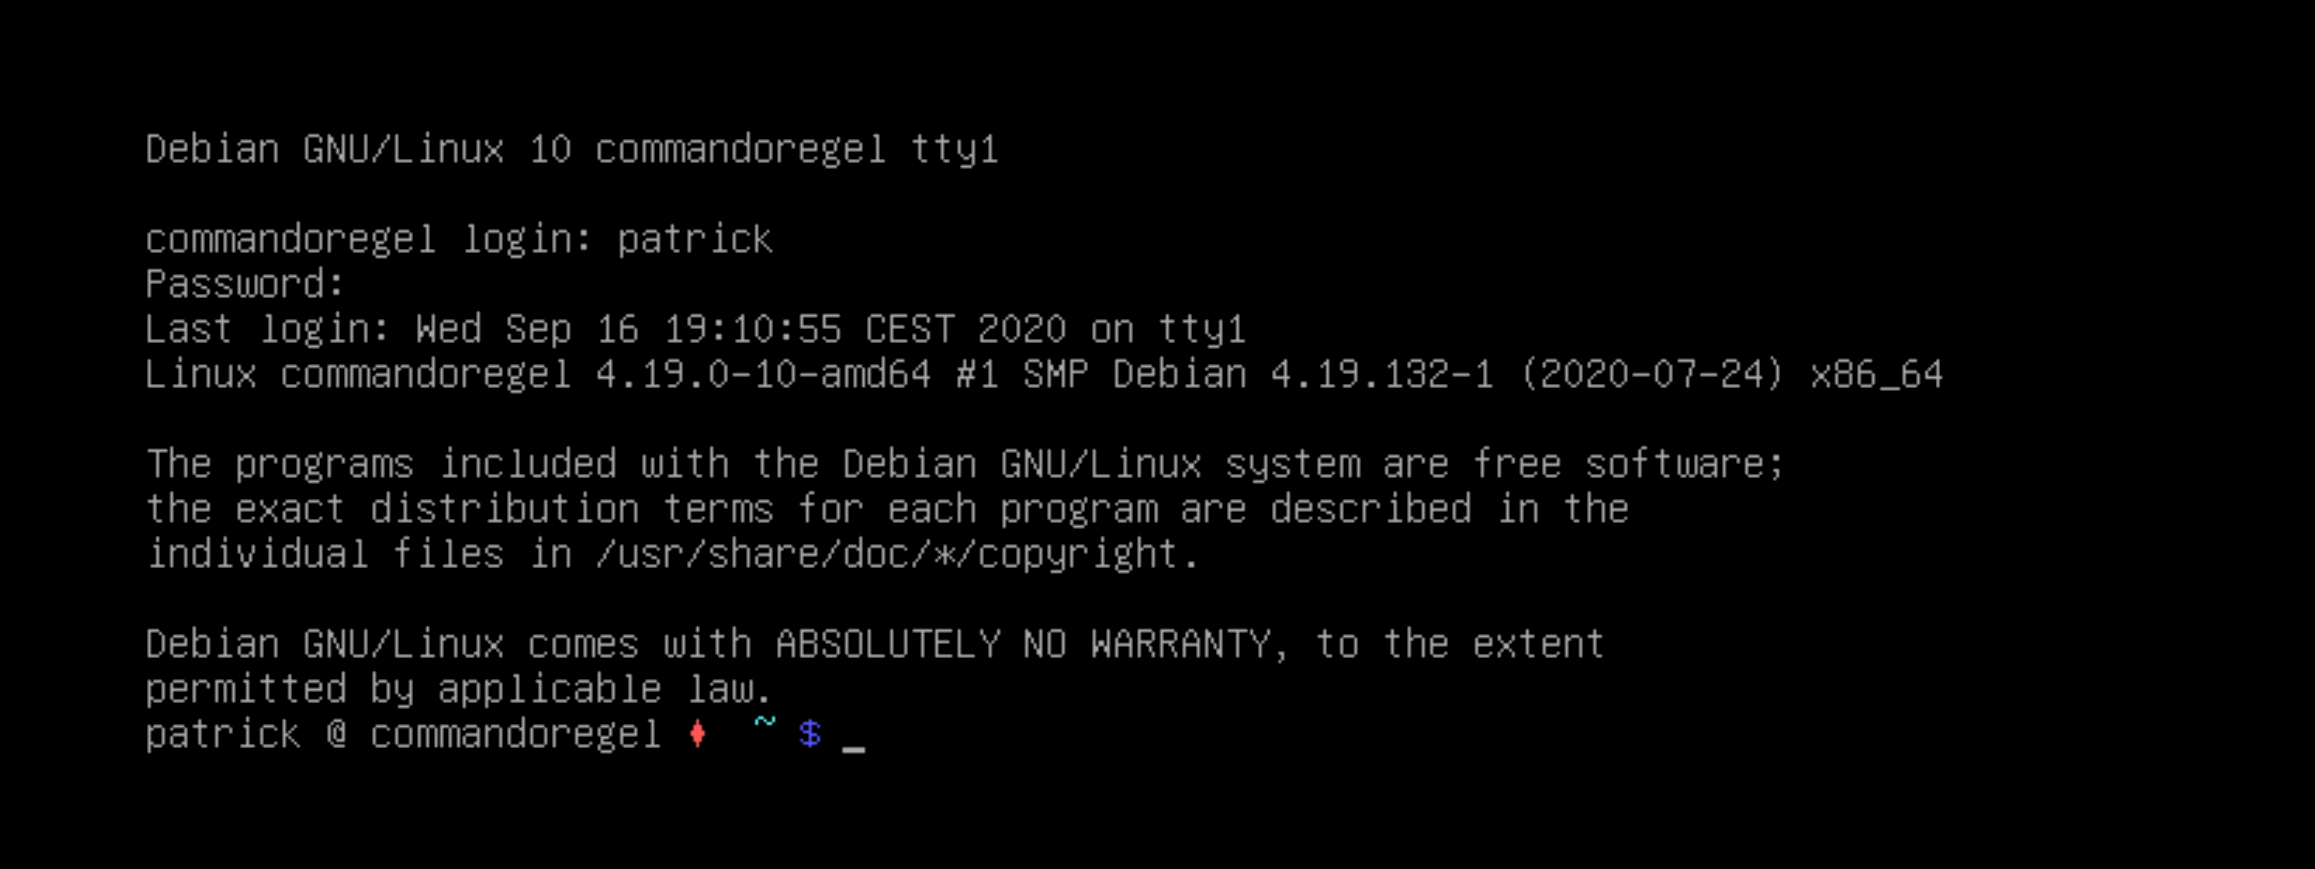 Debian GNU/Linux 10